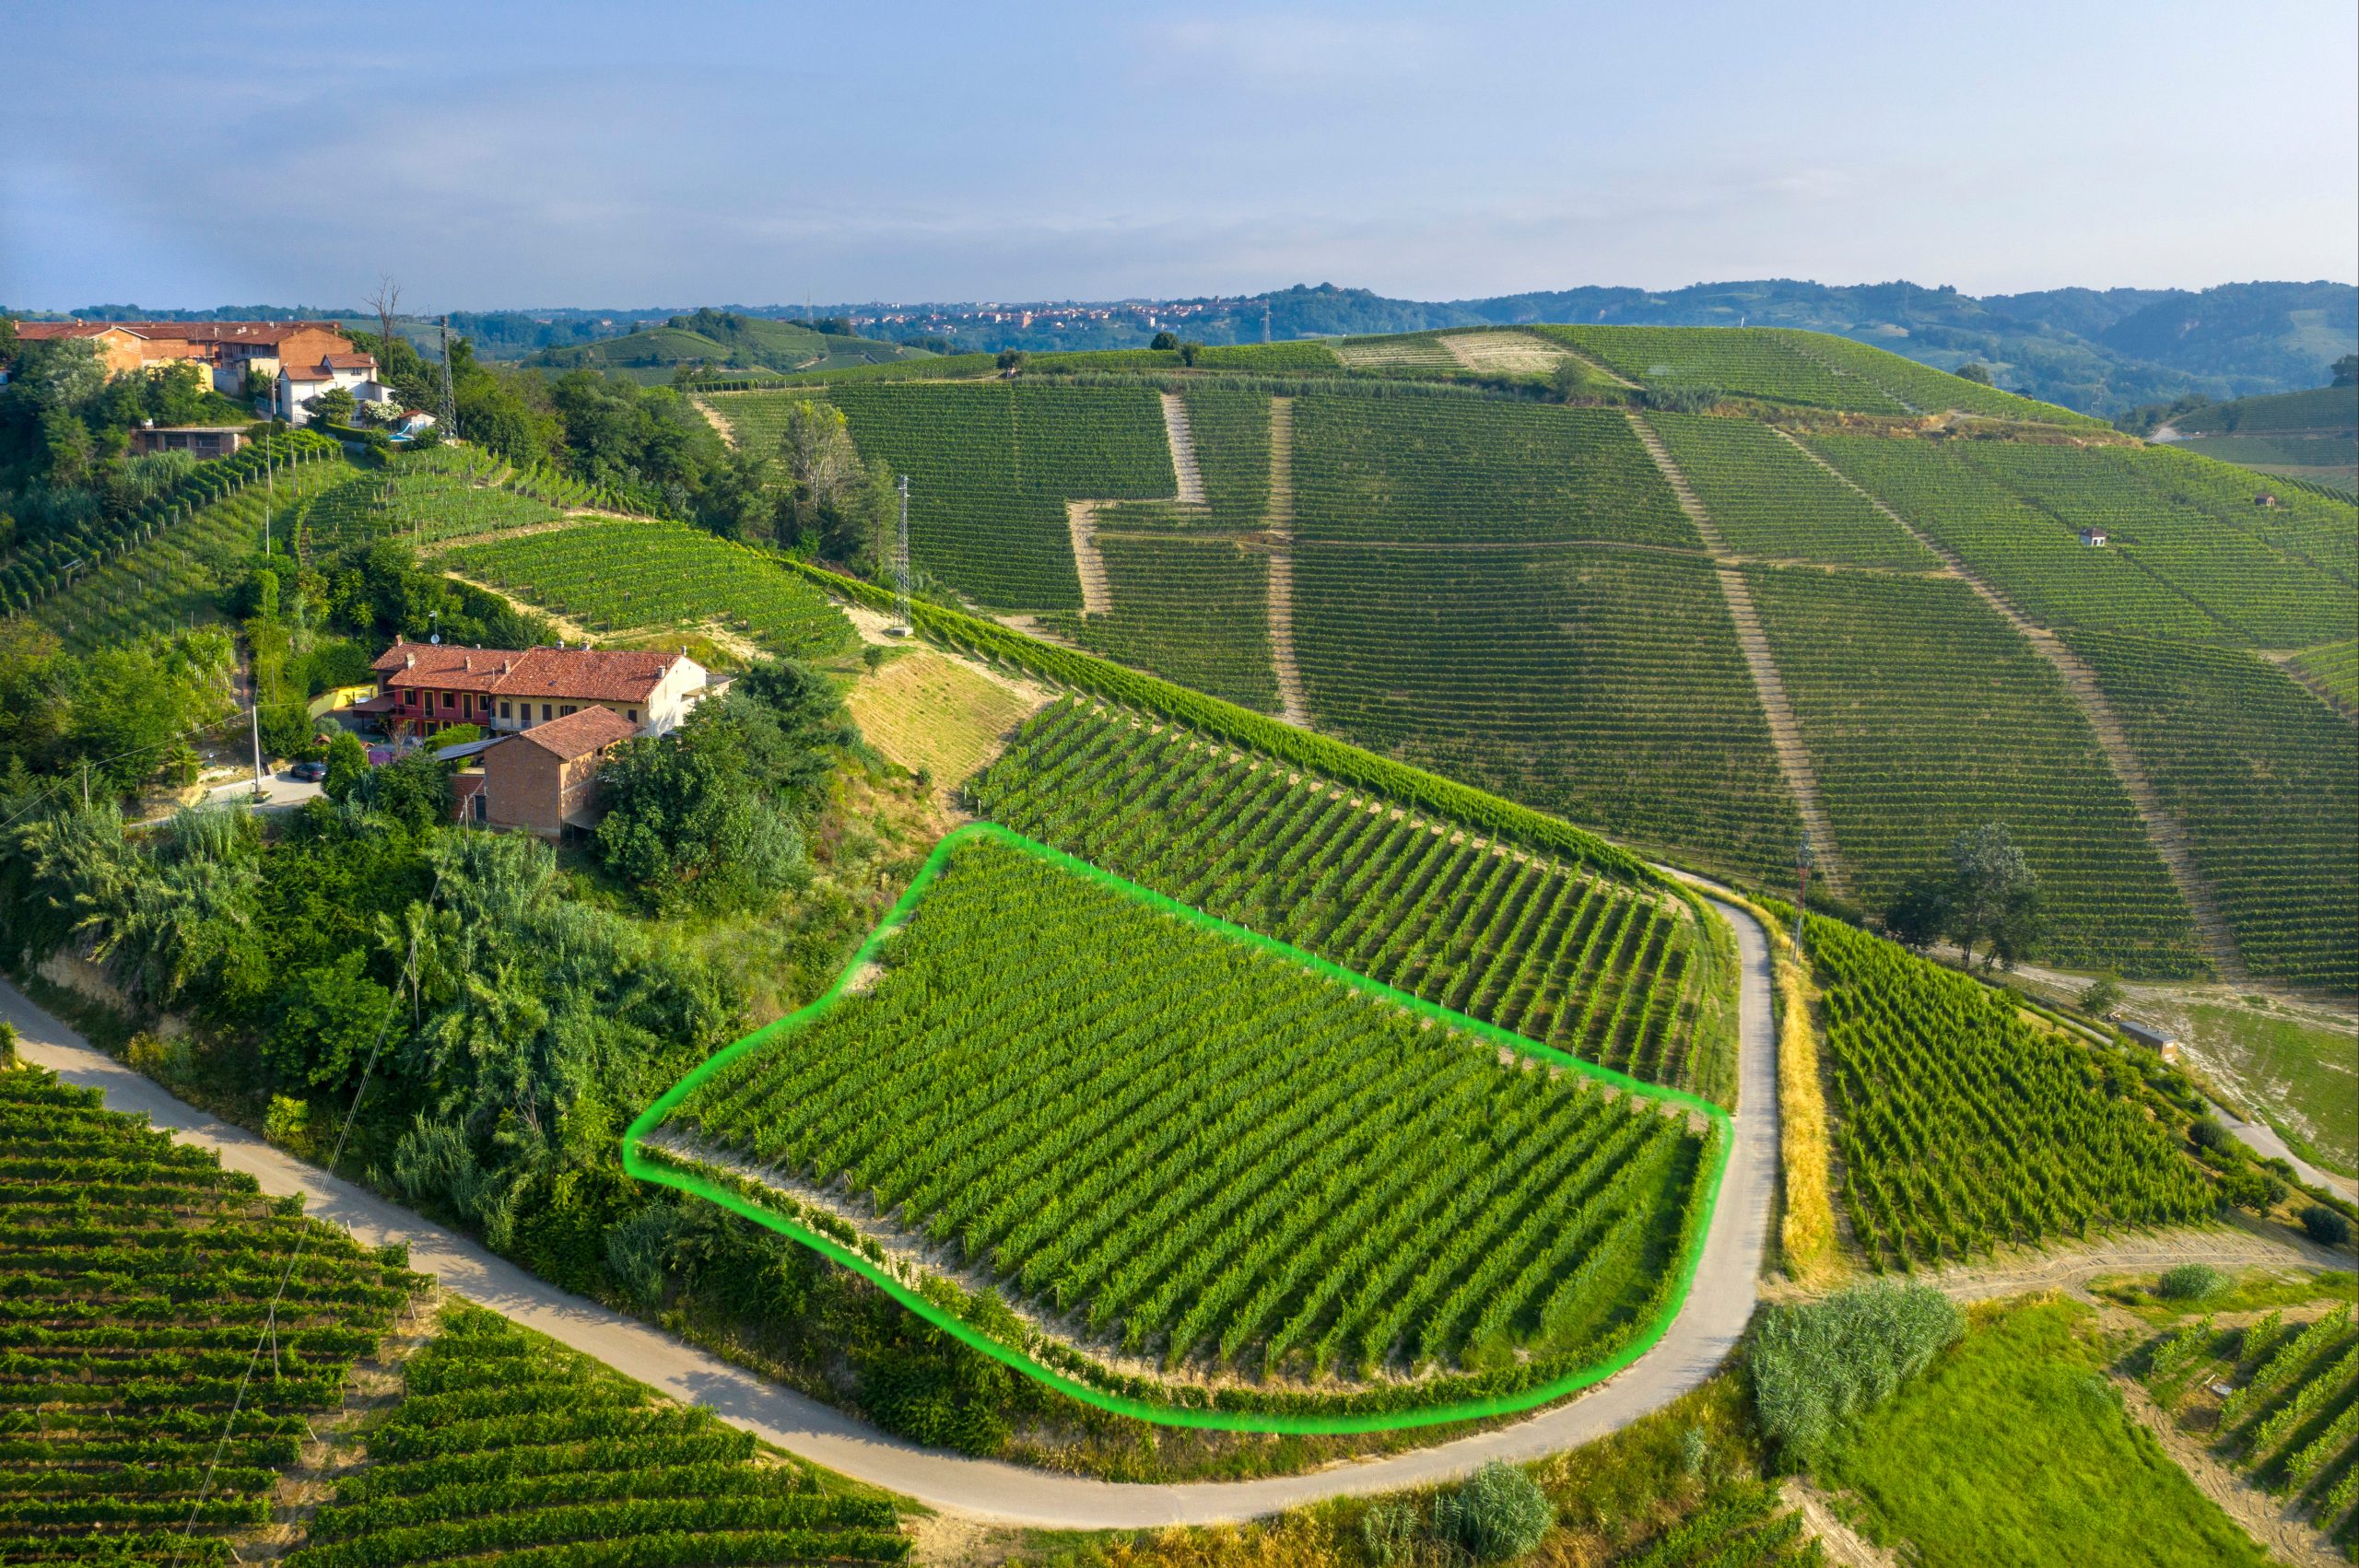 Highlighted S.S. Trinità vineyard